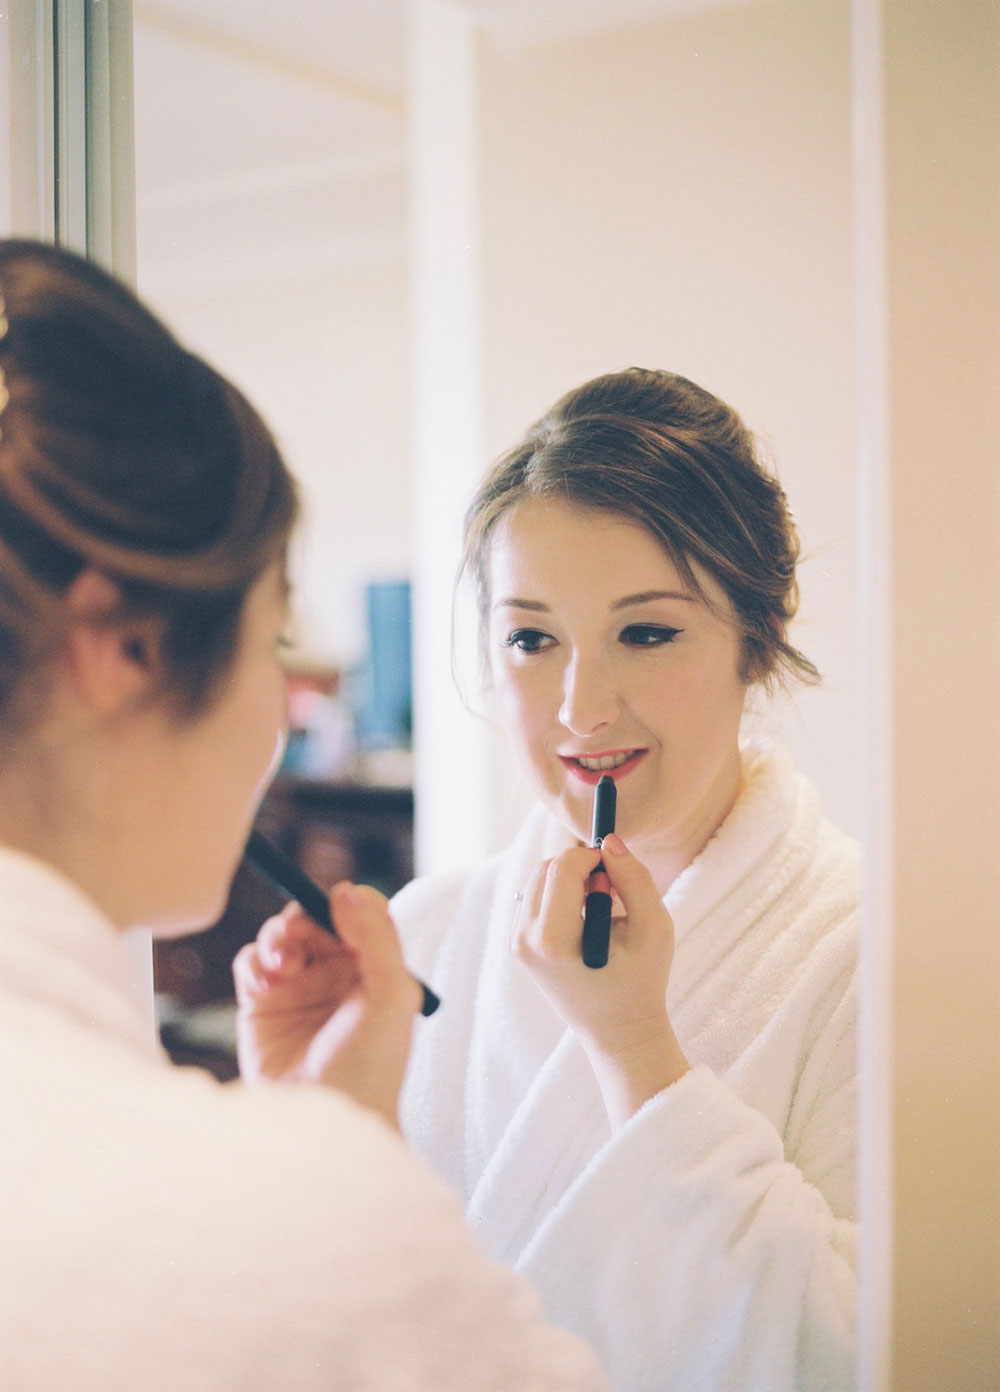 Woman applying a makeup